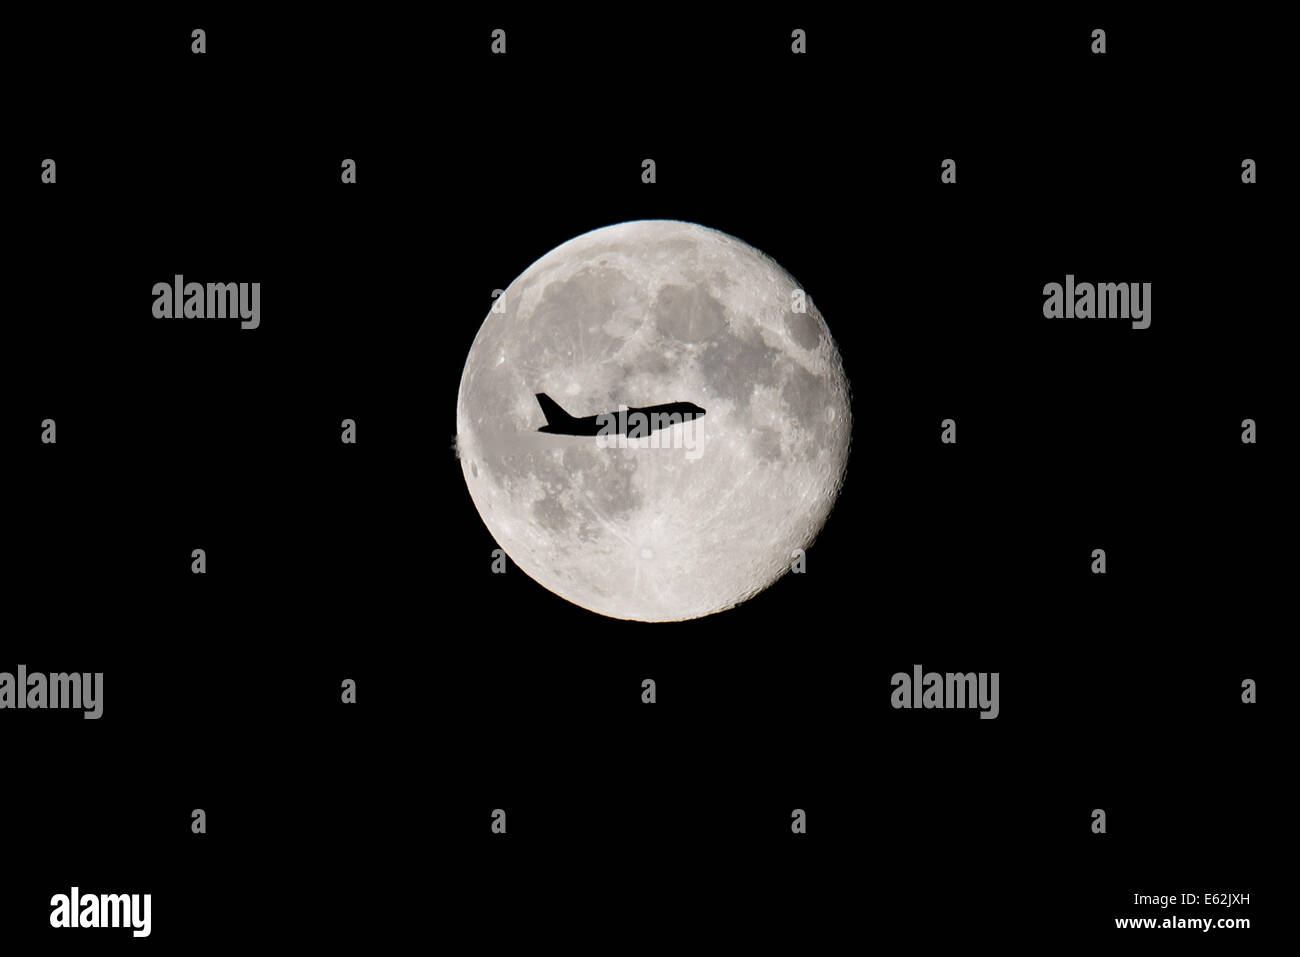 Aeroplane flying across a full moon Stock Photo